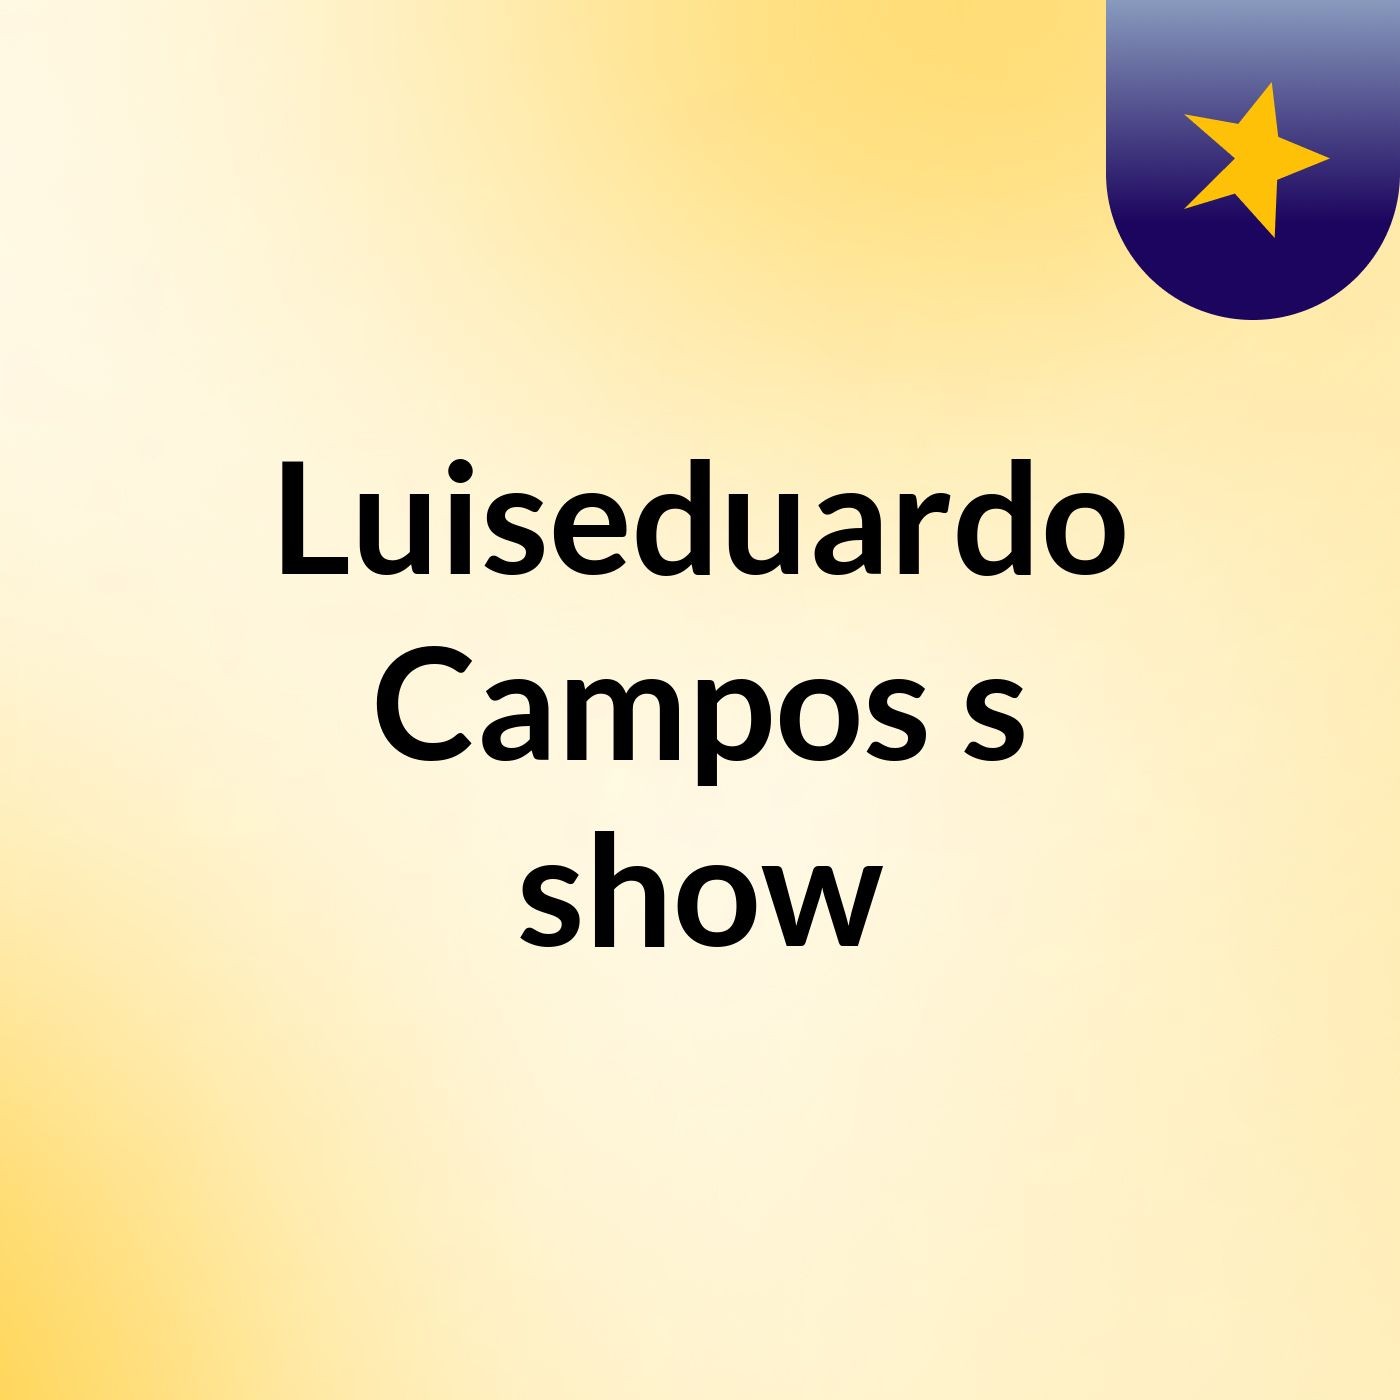 Luiseduardo Campos's show